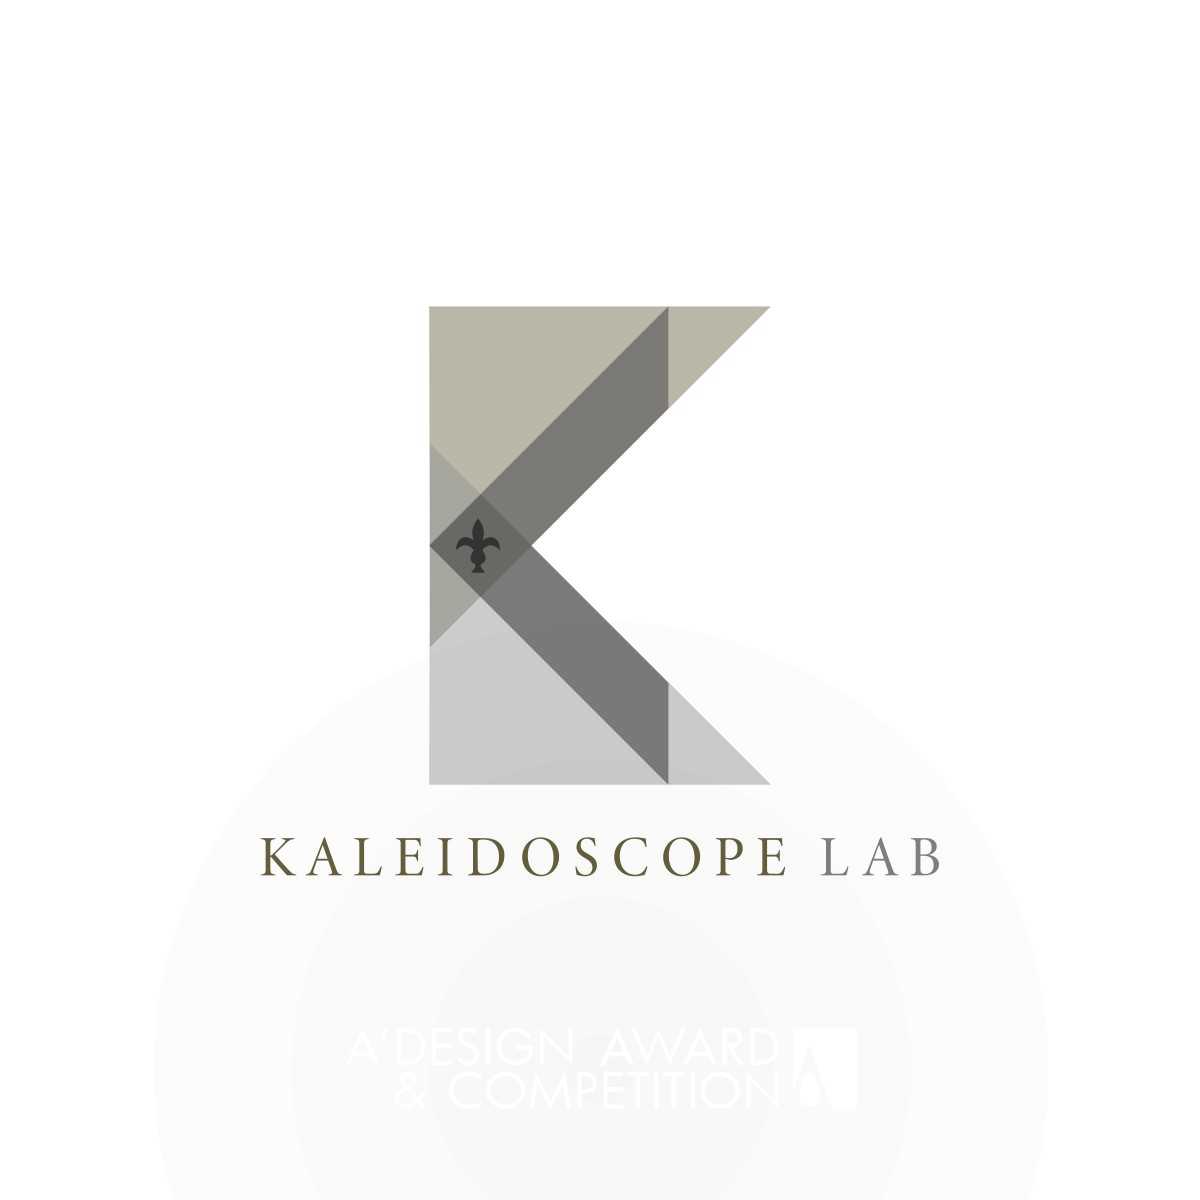 Kaleidoscope Lab Logo by Nicholas Kenton Lui